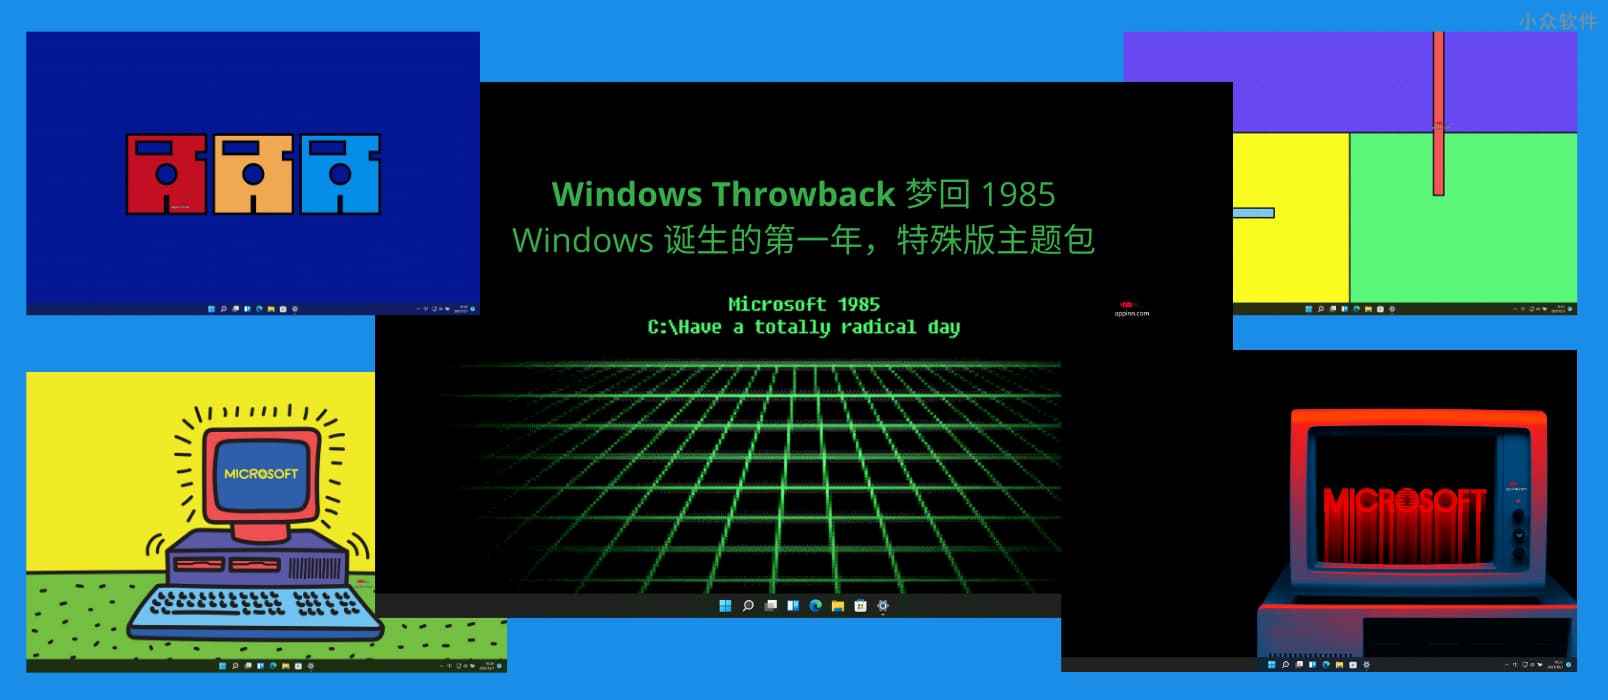 Windows Throwback - 梦回 1985，Windows 诞生的第一年，特殊版主题包